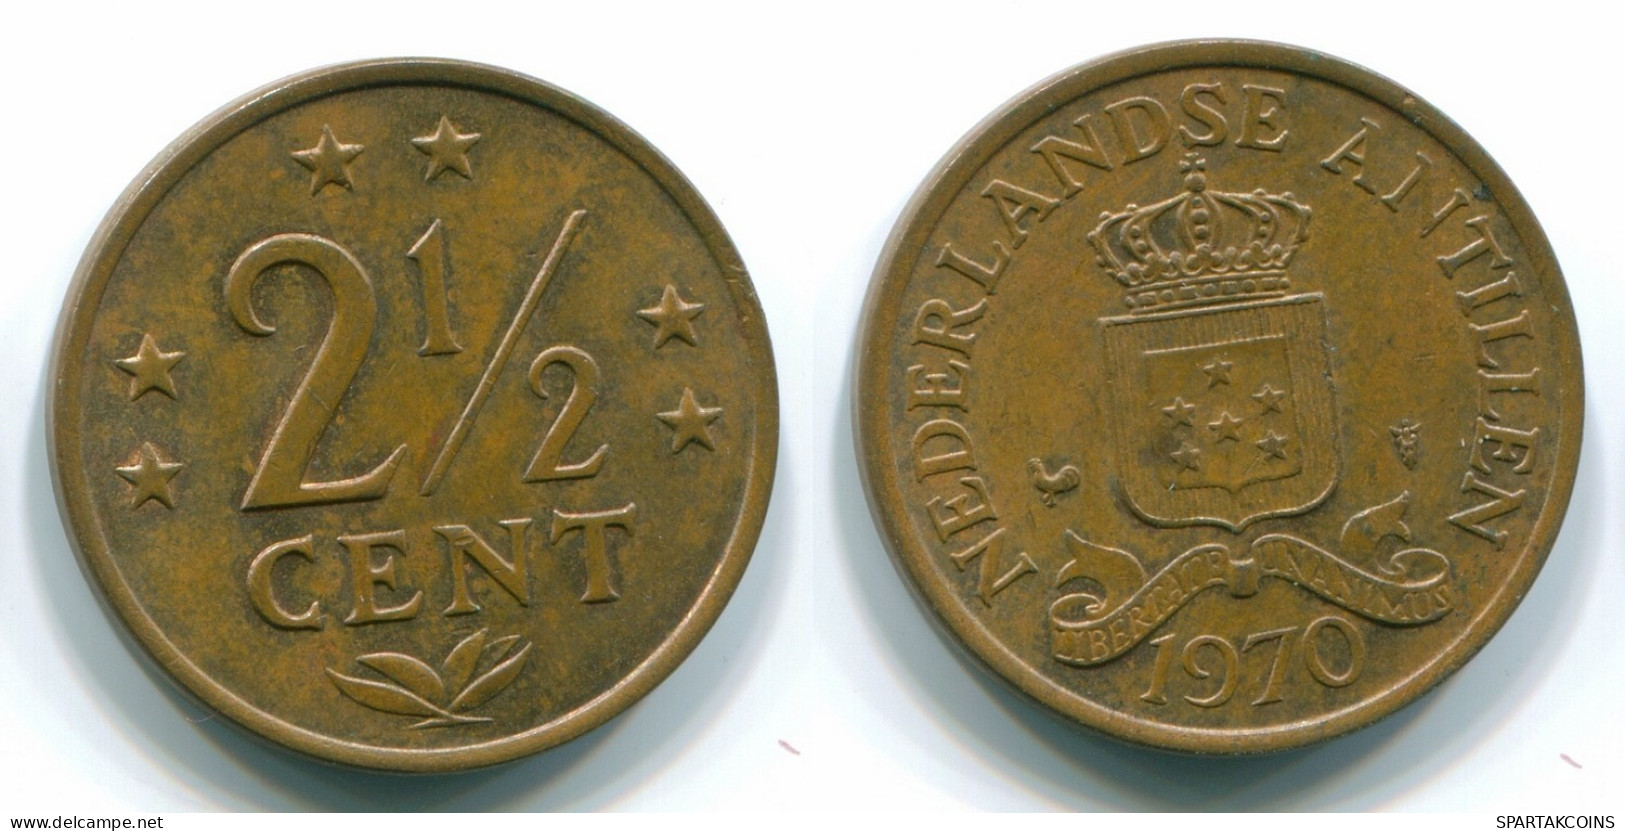 2 1/2 CENT 1970 NIEDERLÄNDISCHE ANTILLEN CENTS Bronze Koloniale Münze #S10472.D.A - Niederländische Antillen